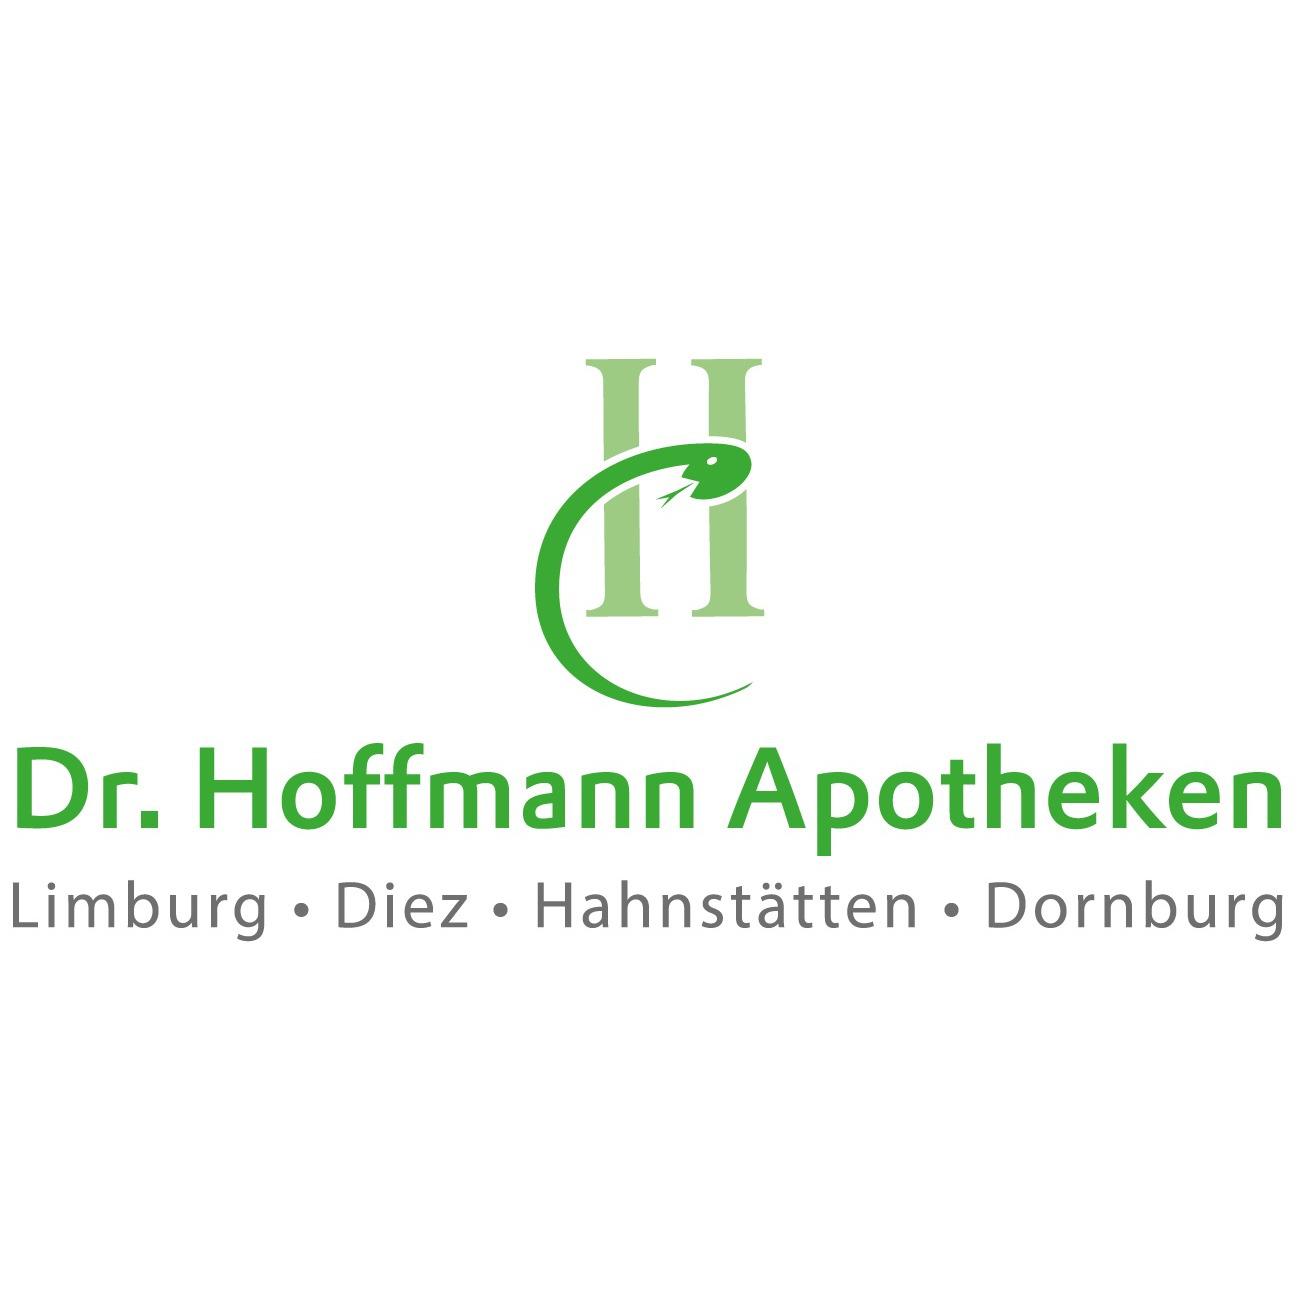 Dornburg-Apotheke in Frickhofen Gemeinde Dornburg in Hessen - Logo